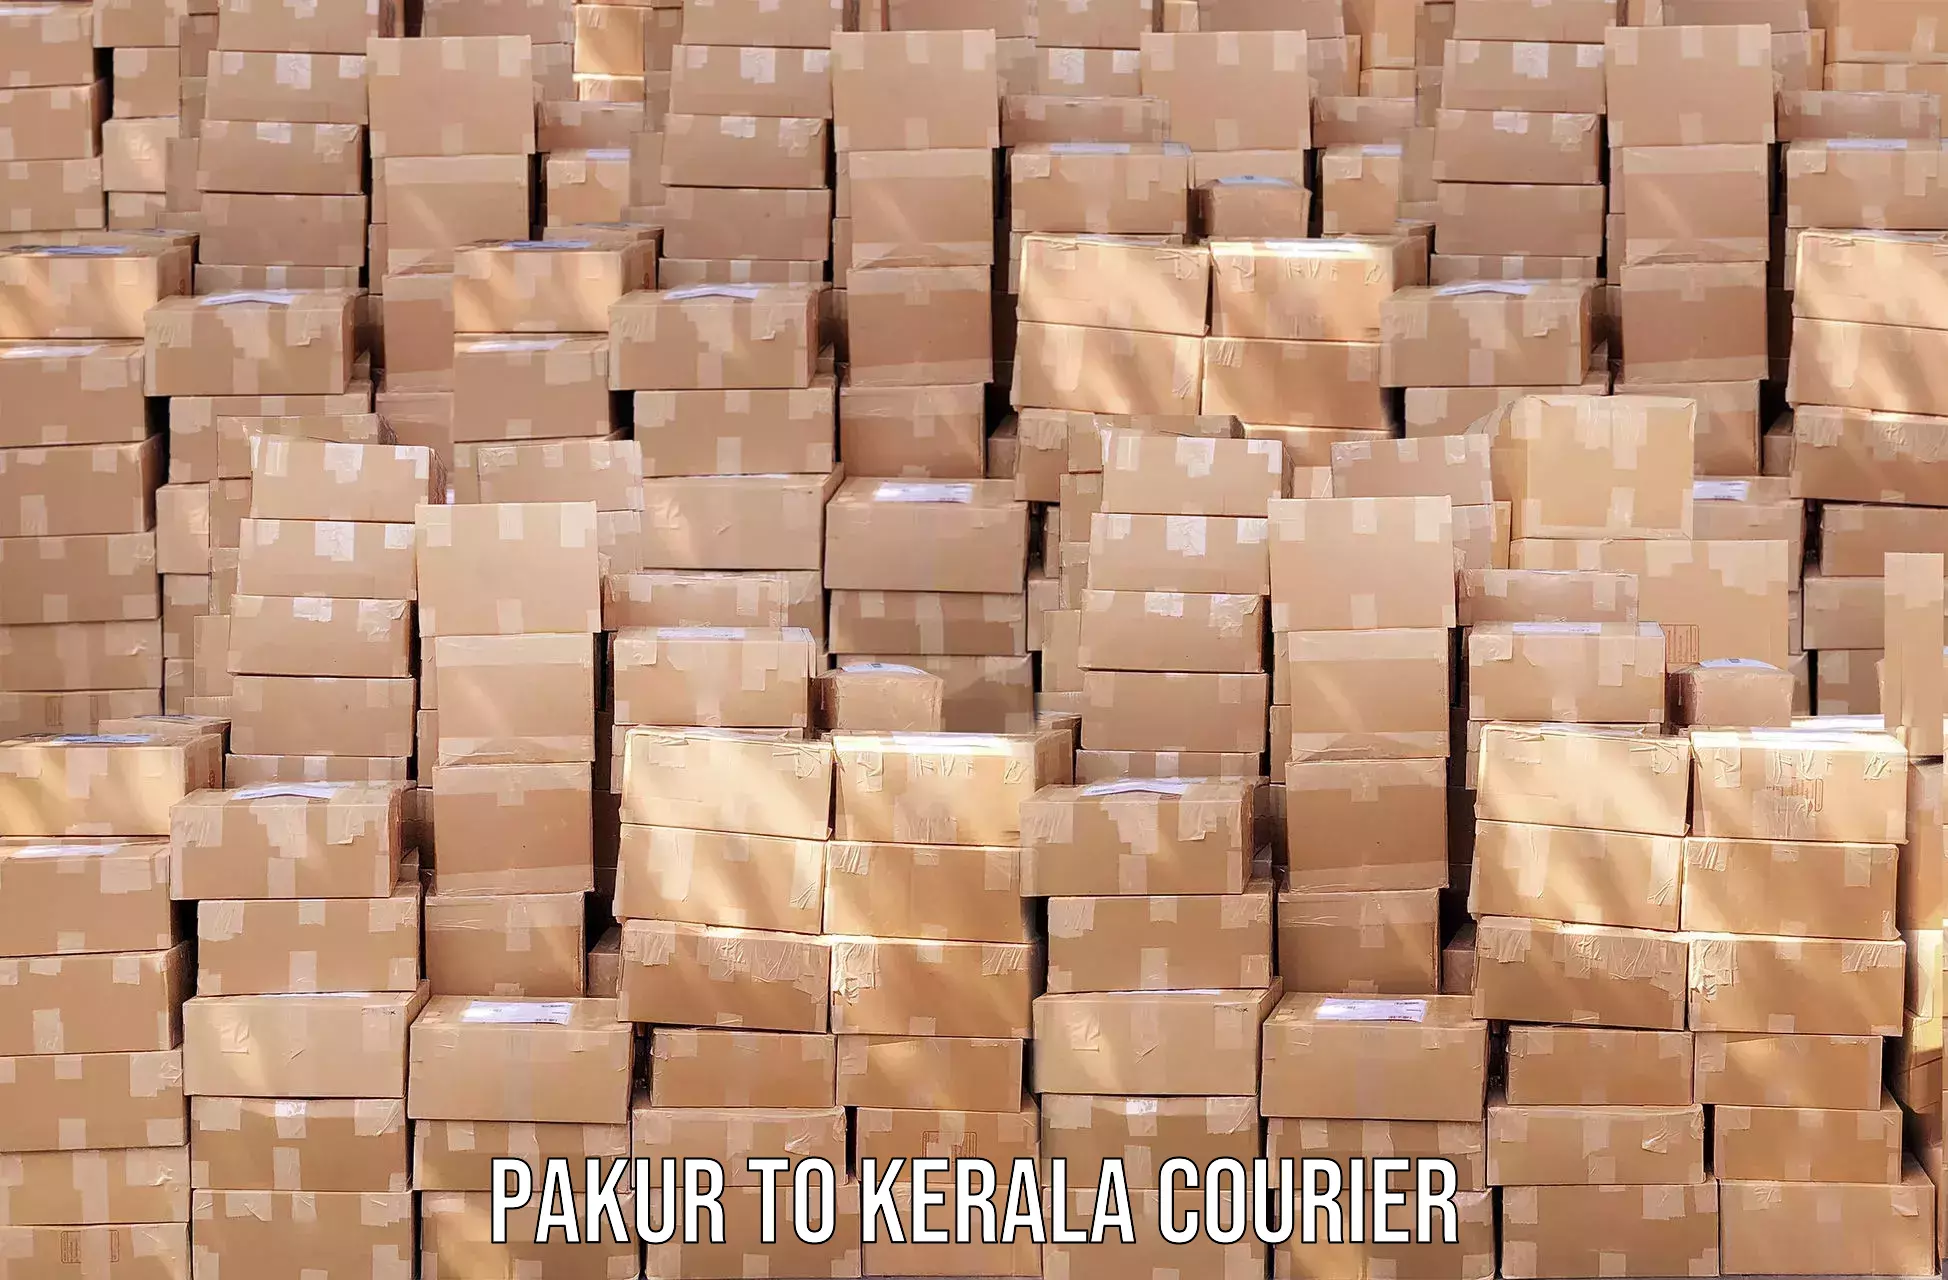 Efficient parcel service Pakur to Udumbanchola